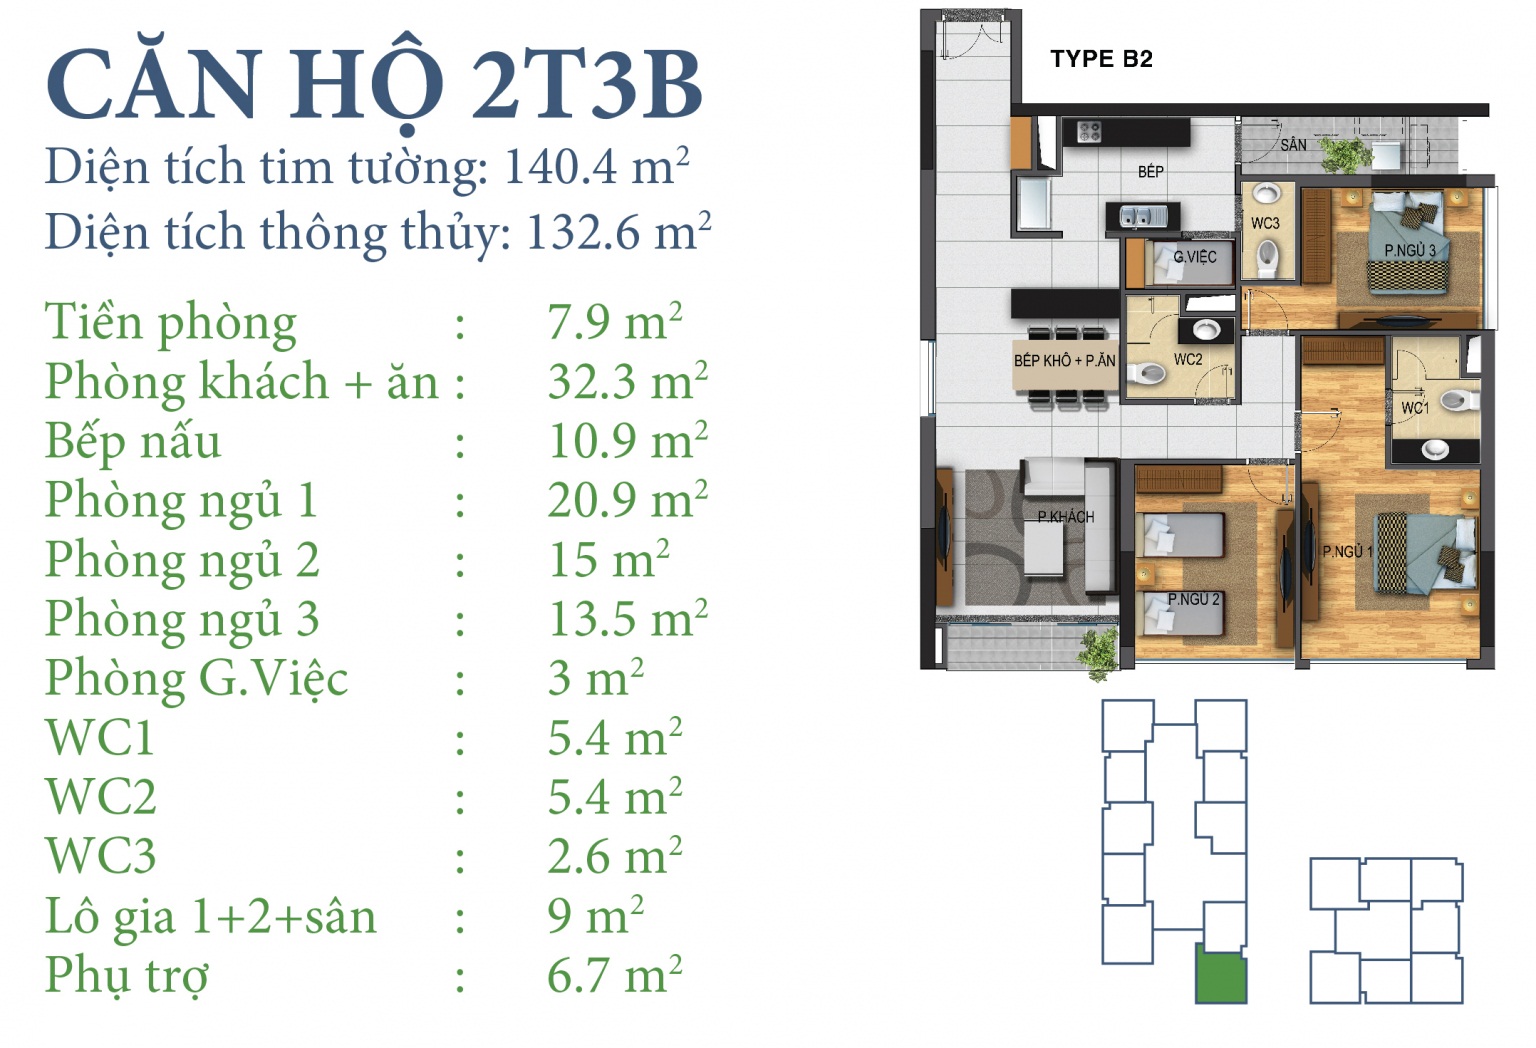 Mặt bằng căn hộ 2T3B chung cư N03T3-T4 Ngoại Giao Đoàn